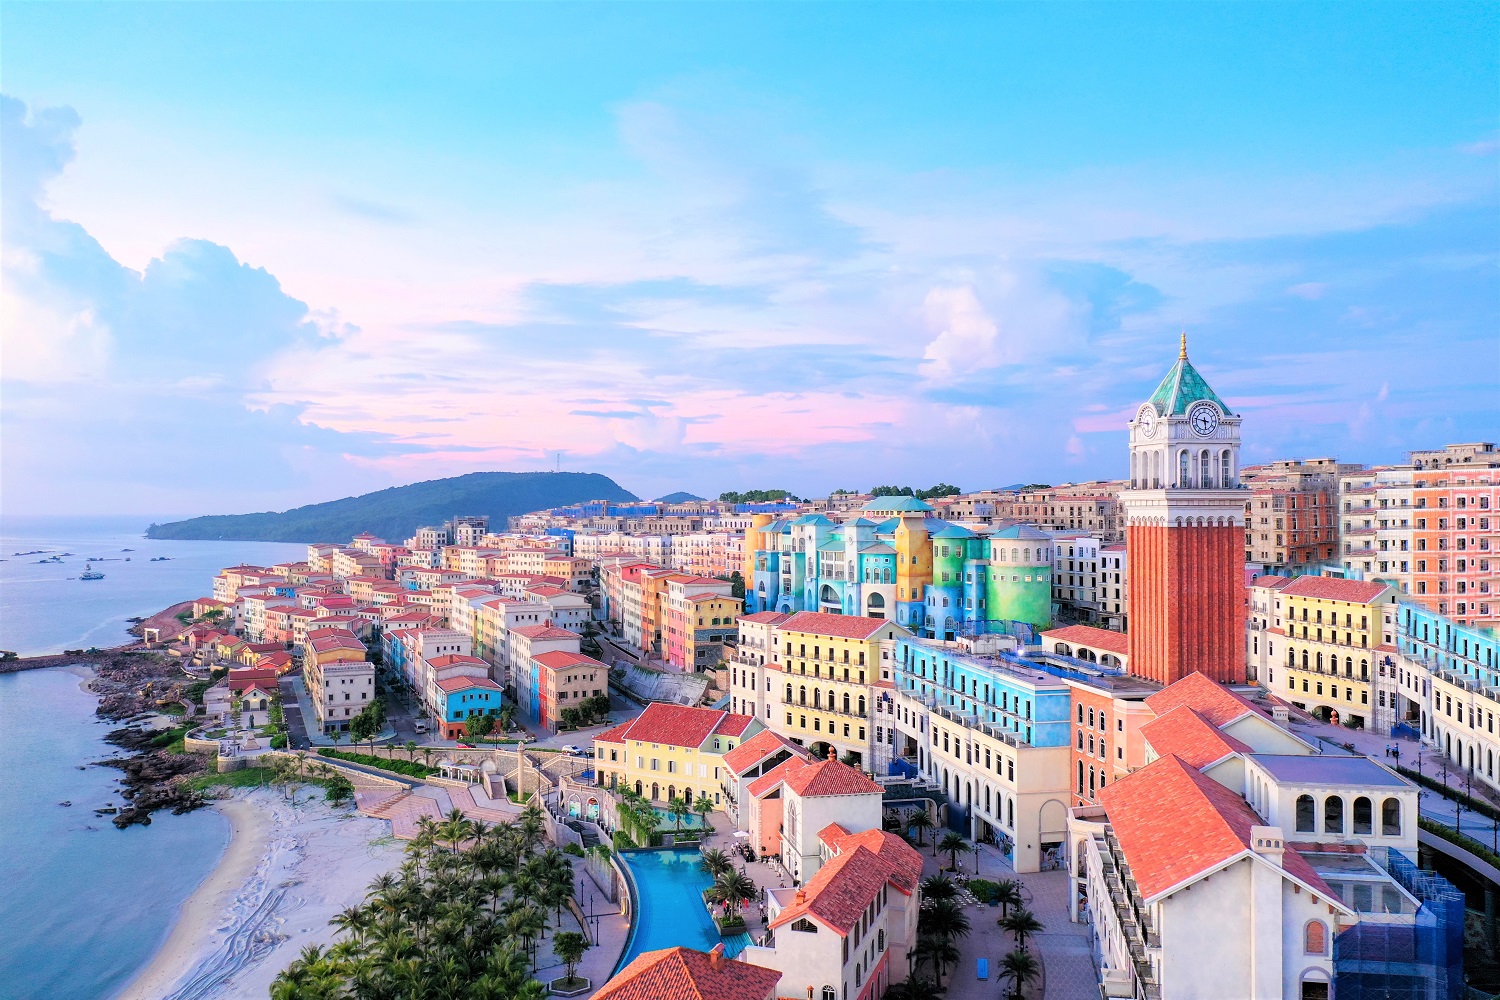 Thị trấn Địa Trung Hải đang không ngừng được Sun Group bồi đắp các công trình biểu tượng để trở thành tâm điểm du lịch, đầu tư tại Phú Quốc